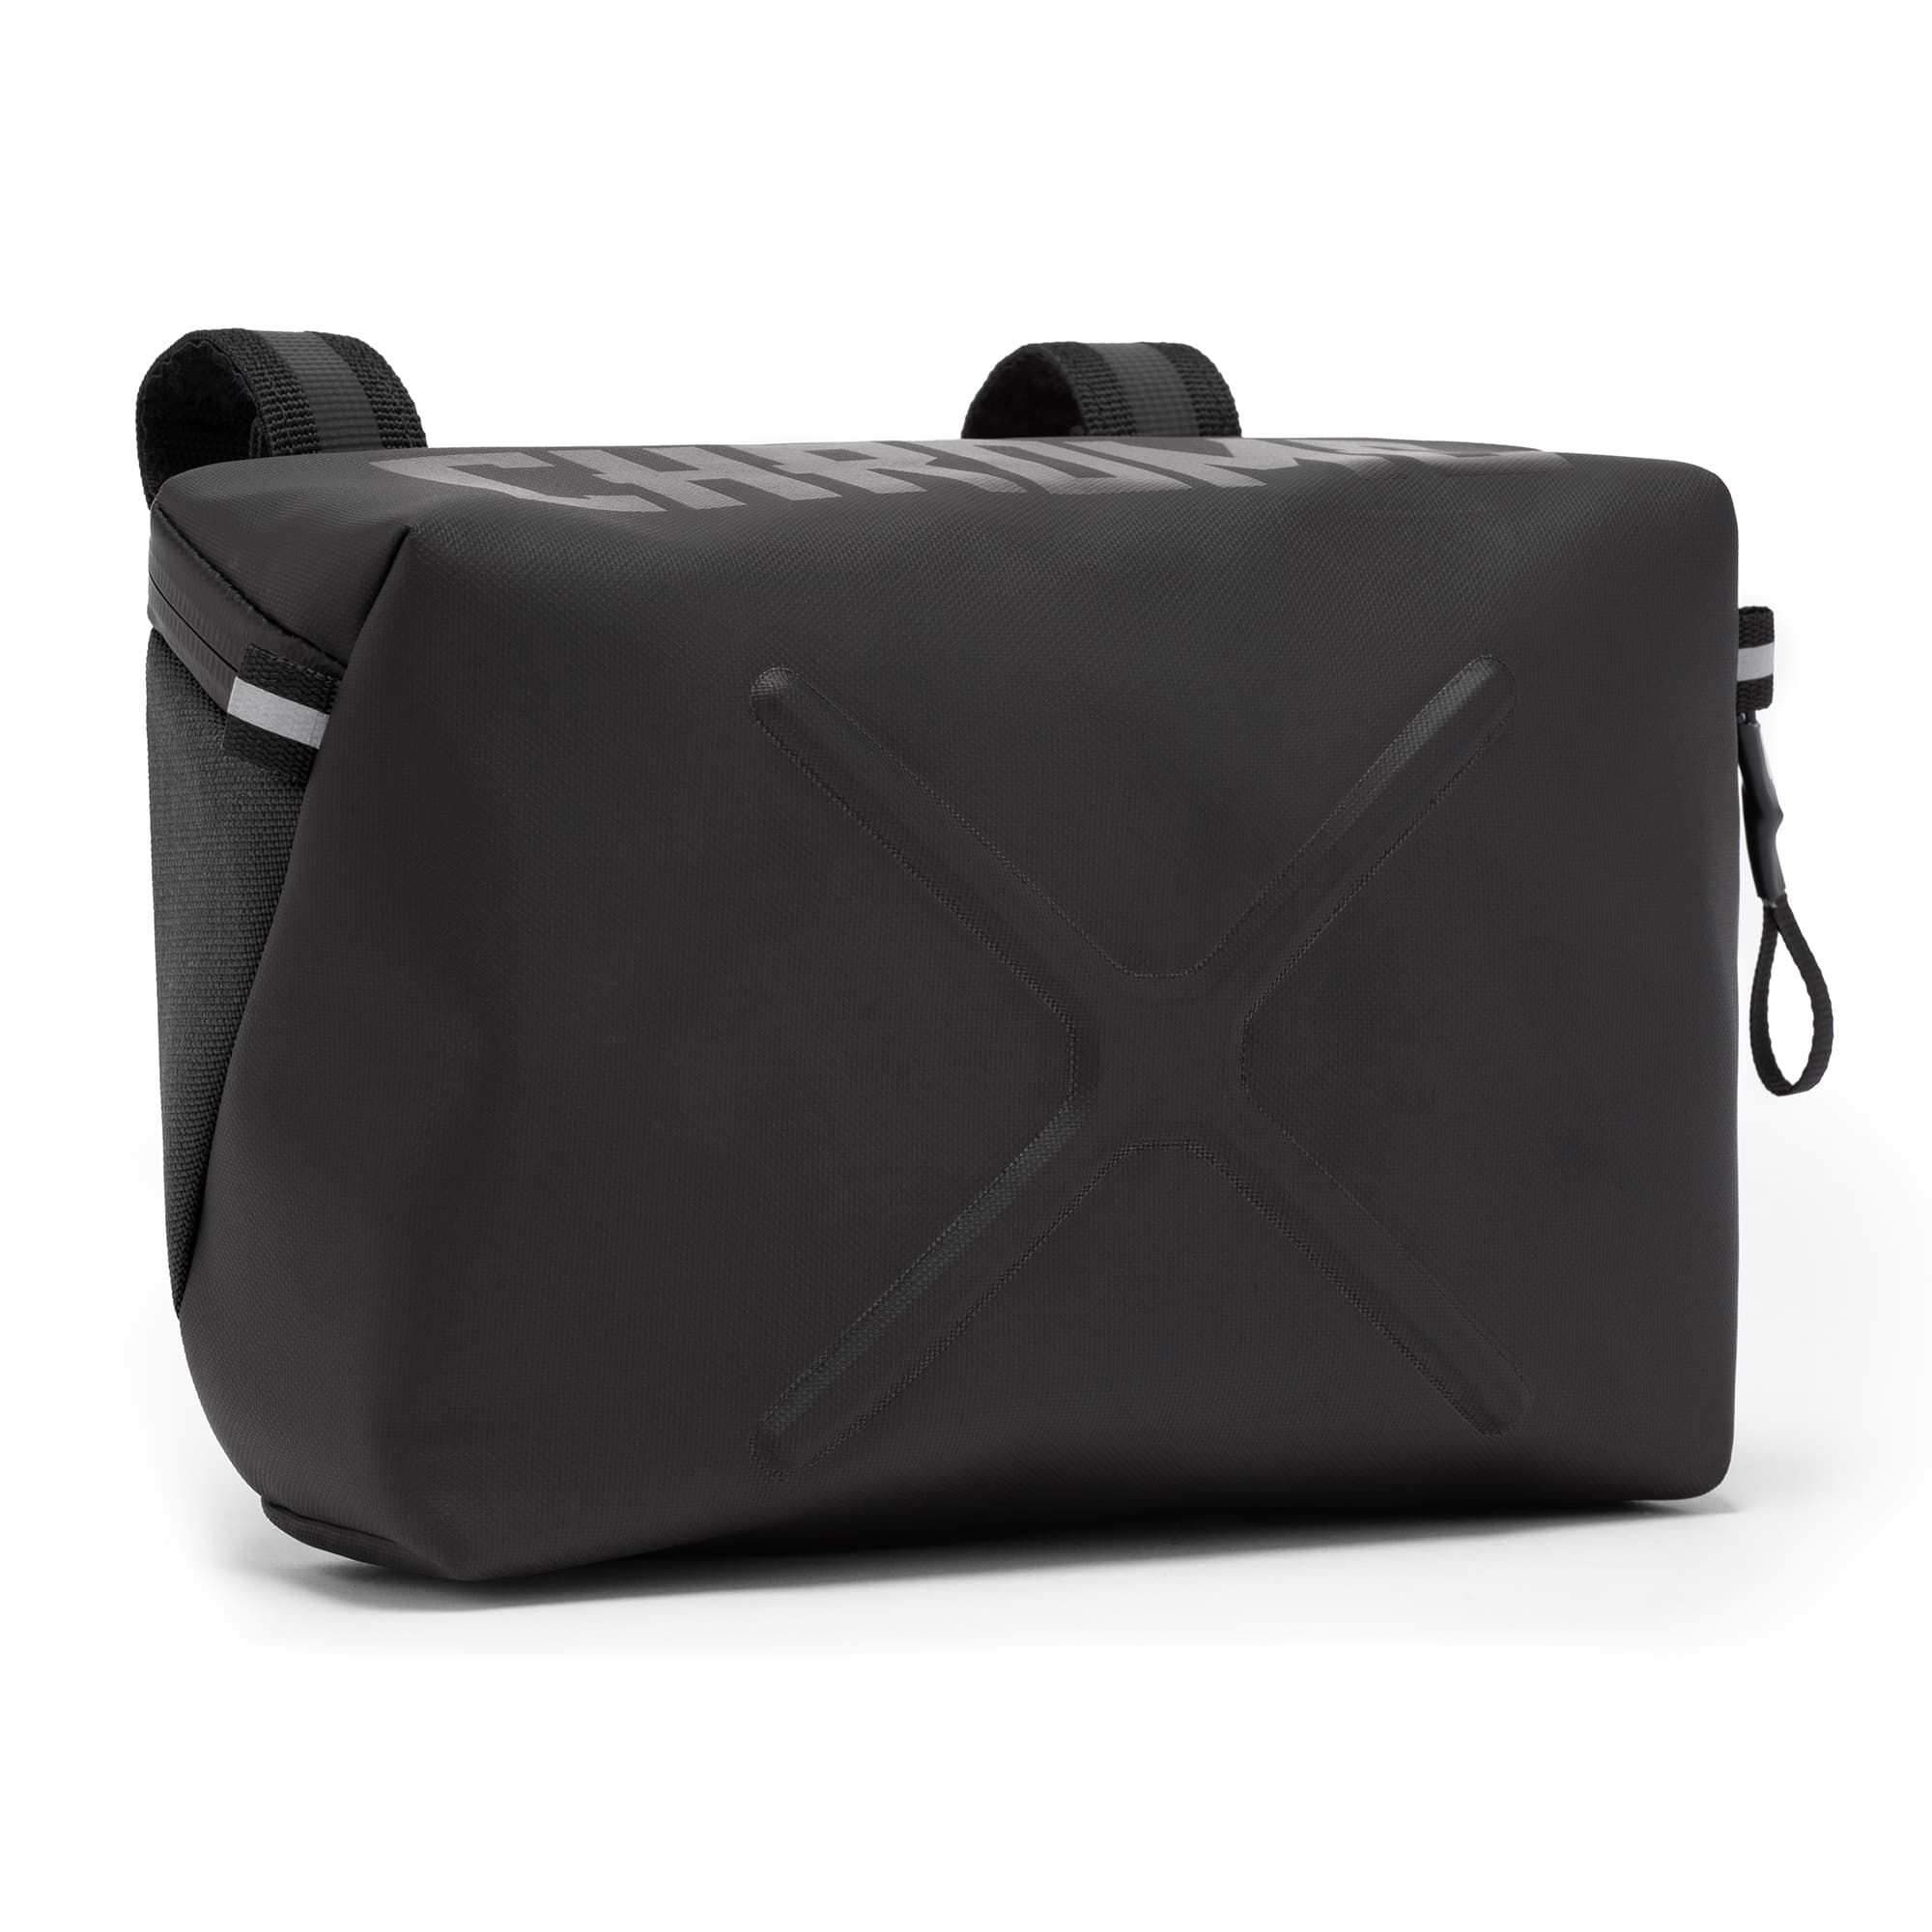 Helix Handlebar bag in black #color_black